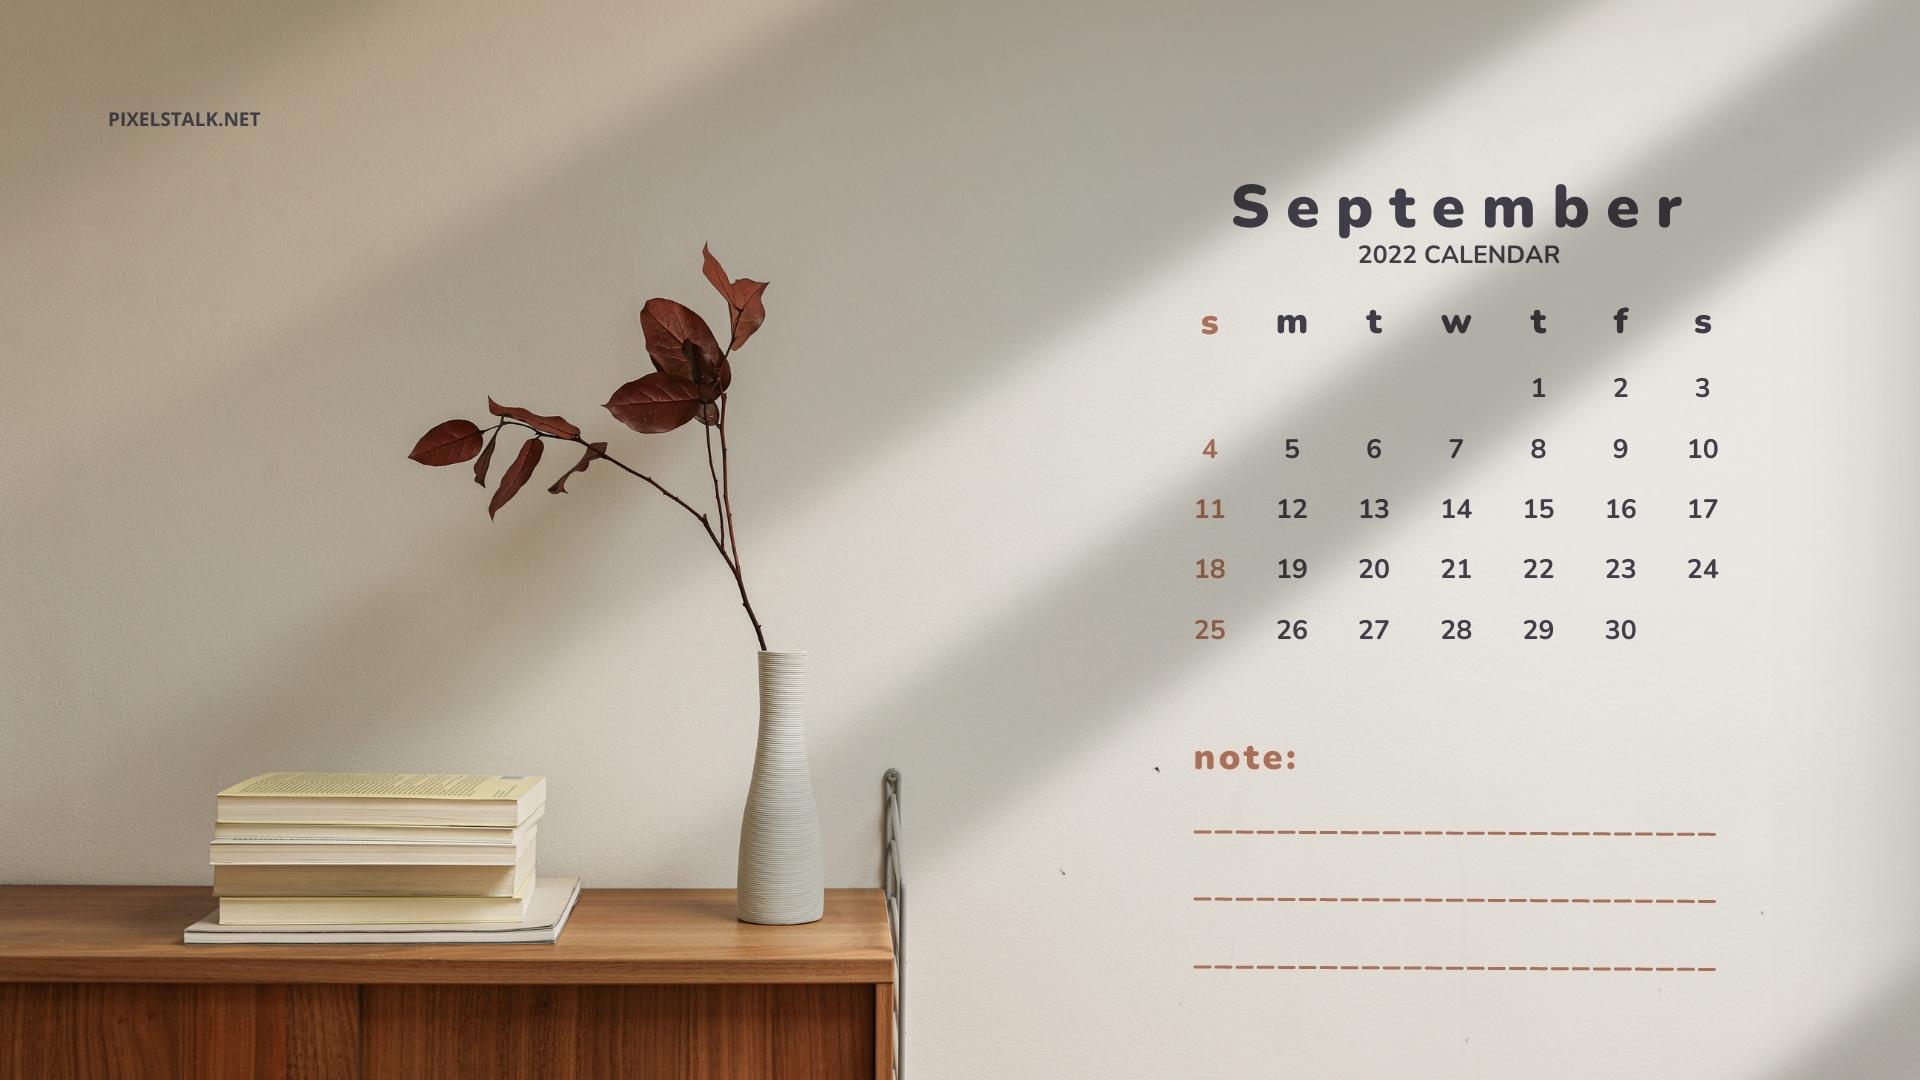 September calendar wallpaper hd free download